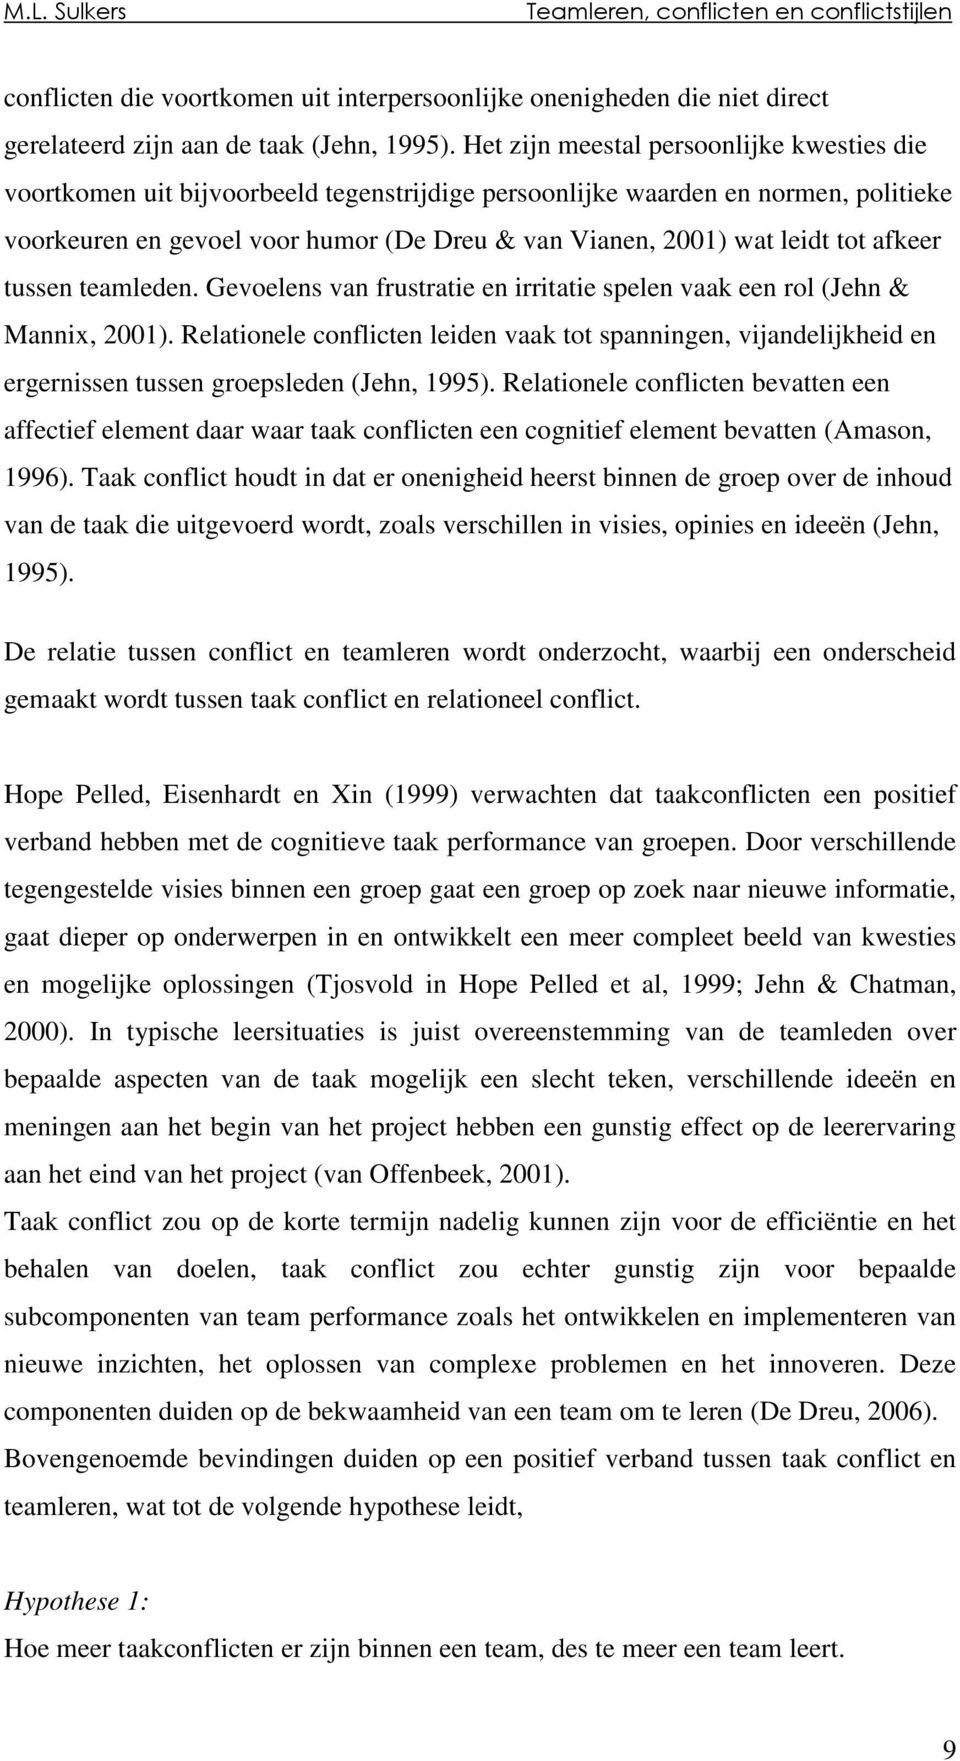 tot afkeer tussen teamleden. Gevoelens van frustratie en irritatie spelen vaak een rol (Jehn & Mannix, 2001).